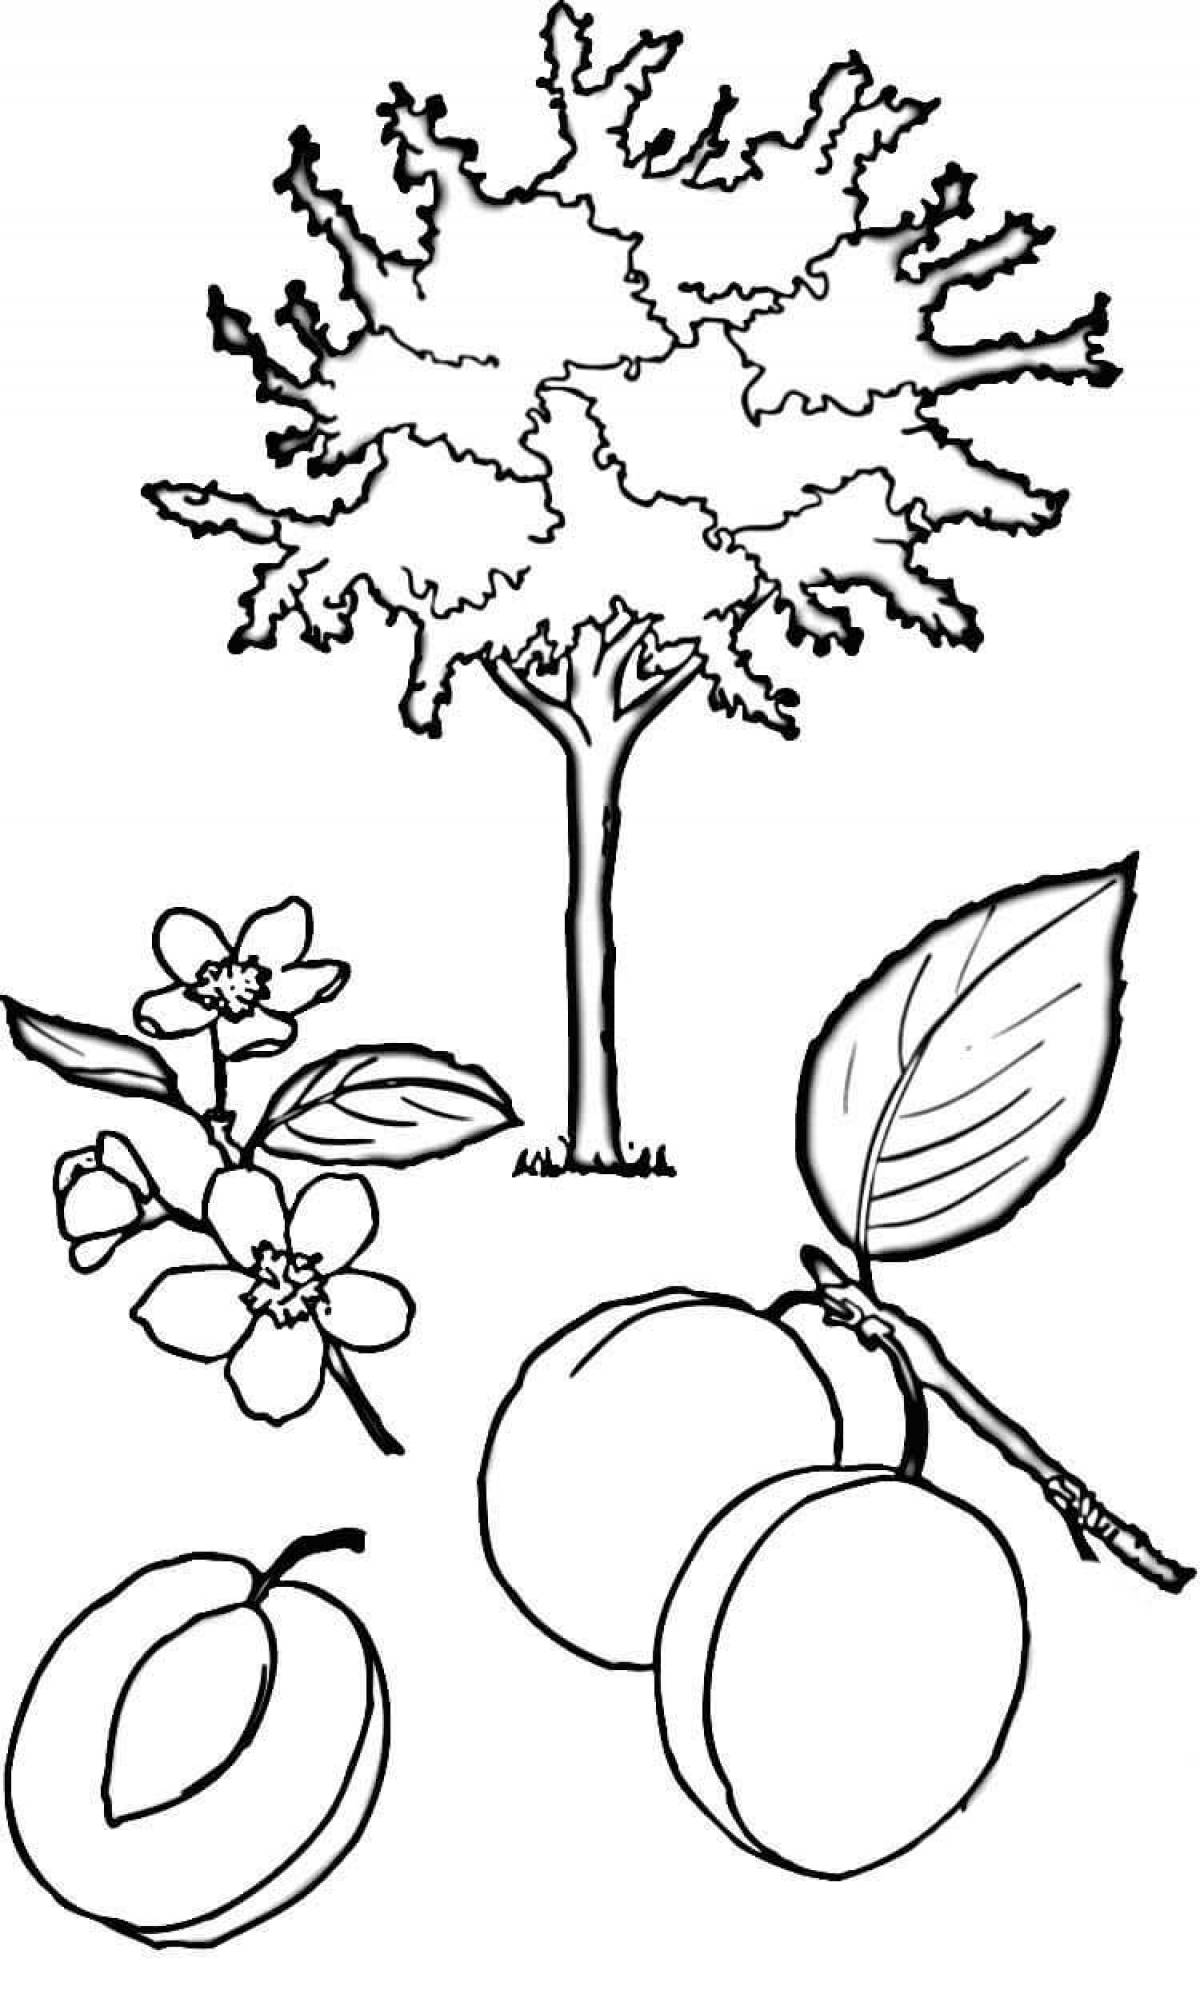 Плодовые деревья раскраска для детей